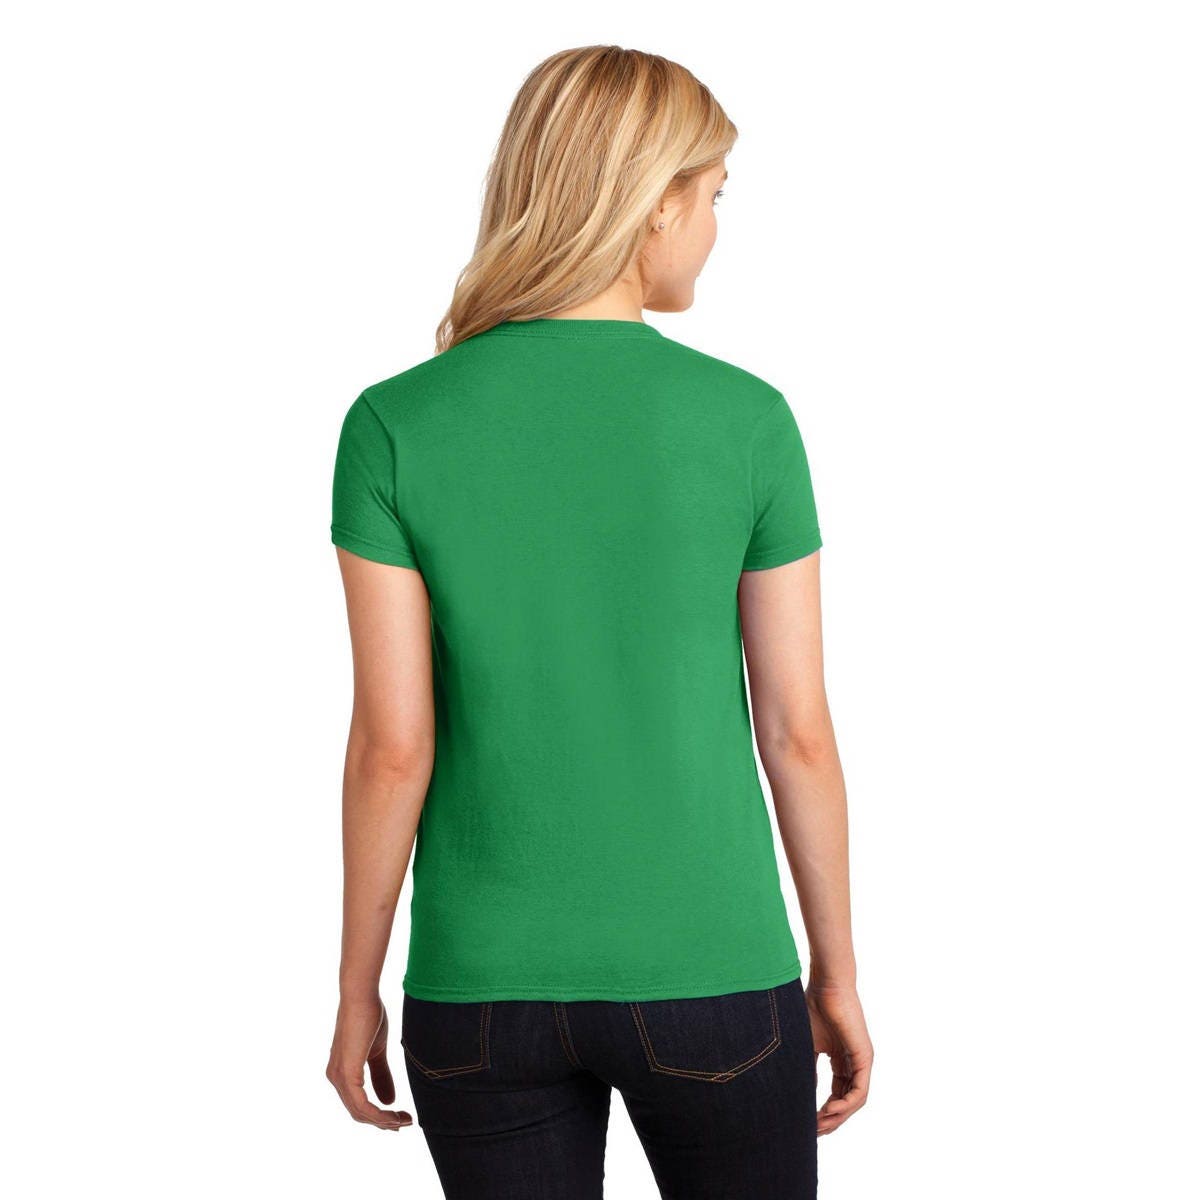 Women's St. Patricks Day Shirt, Irishish, Irish Shirt, Shamrock, Green Shirt, Irish Tee, Funny